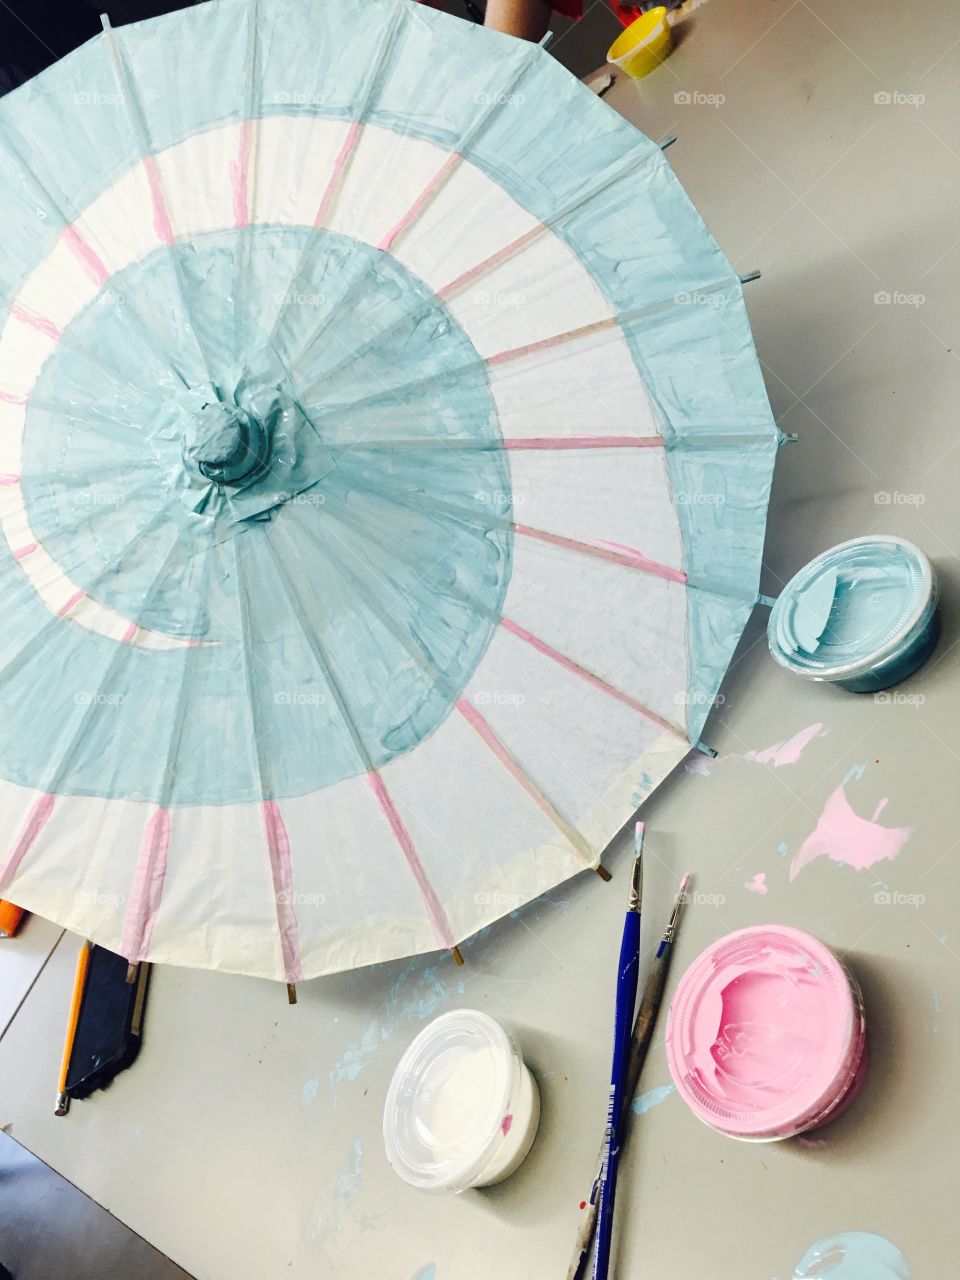 Art class making japenese umbrellas 